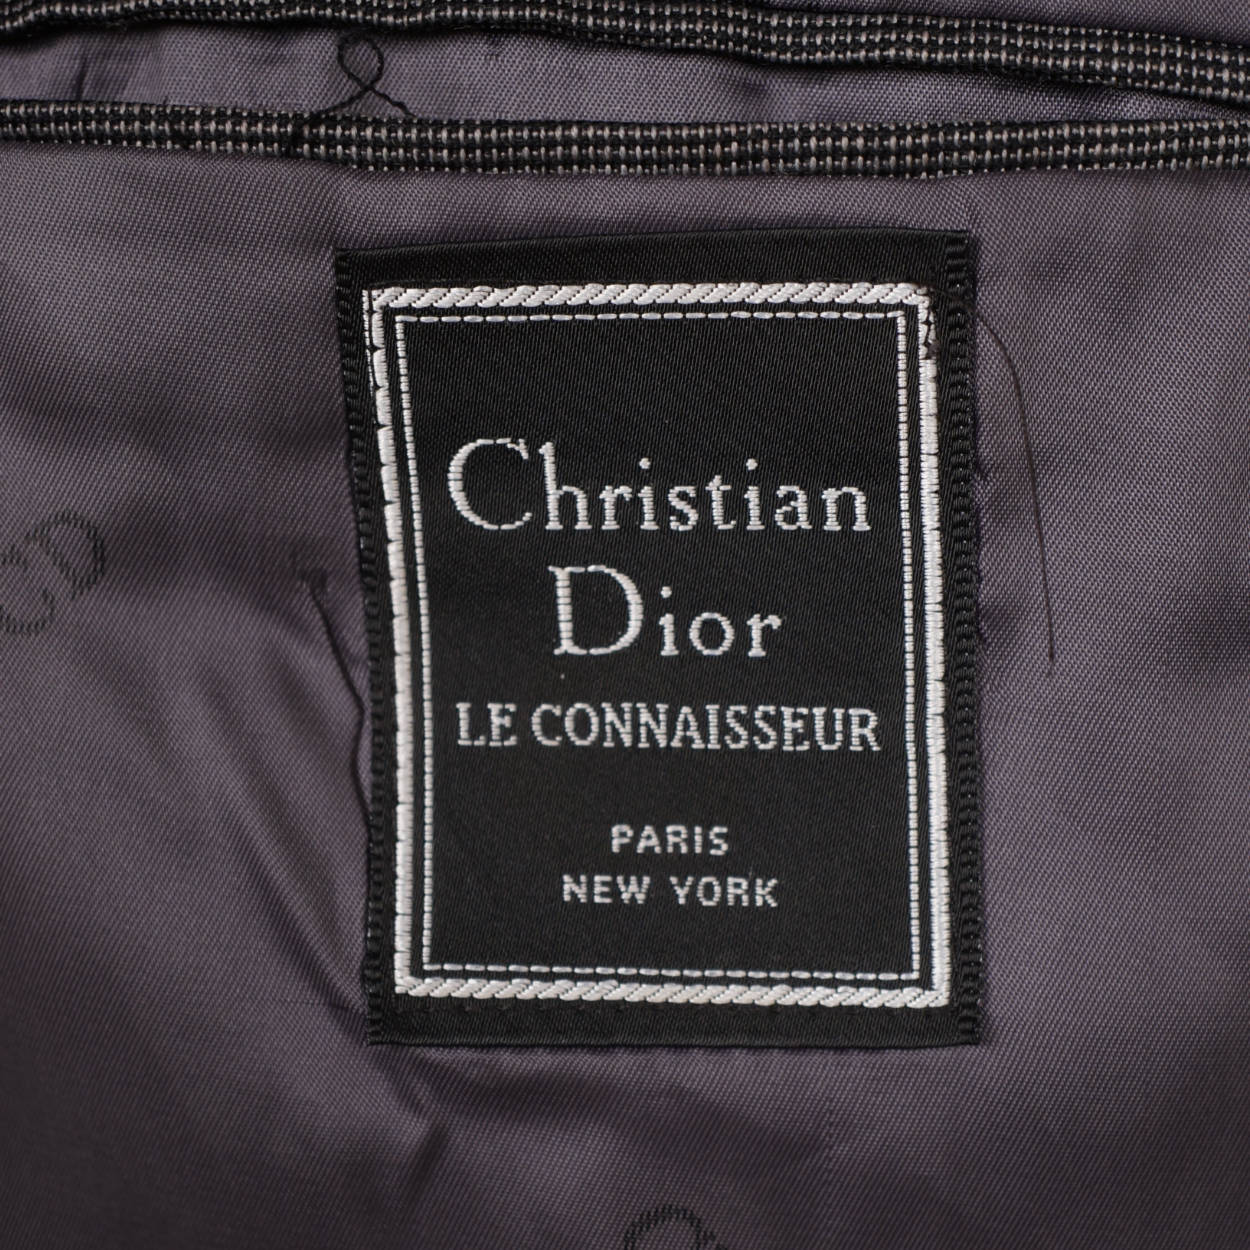 Vintage Christian Dior Le Connaisseur Tux Dinner Jacket 1980s 90s Size